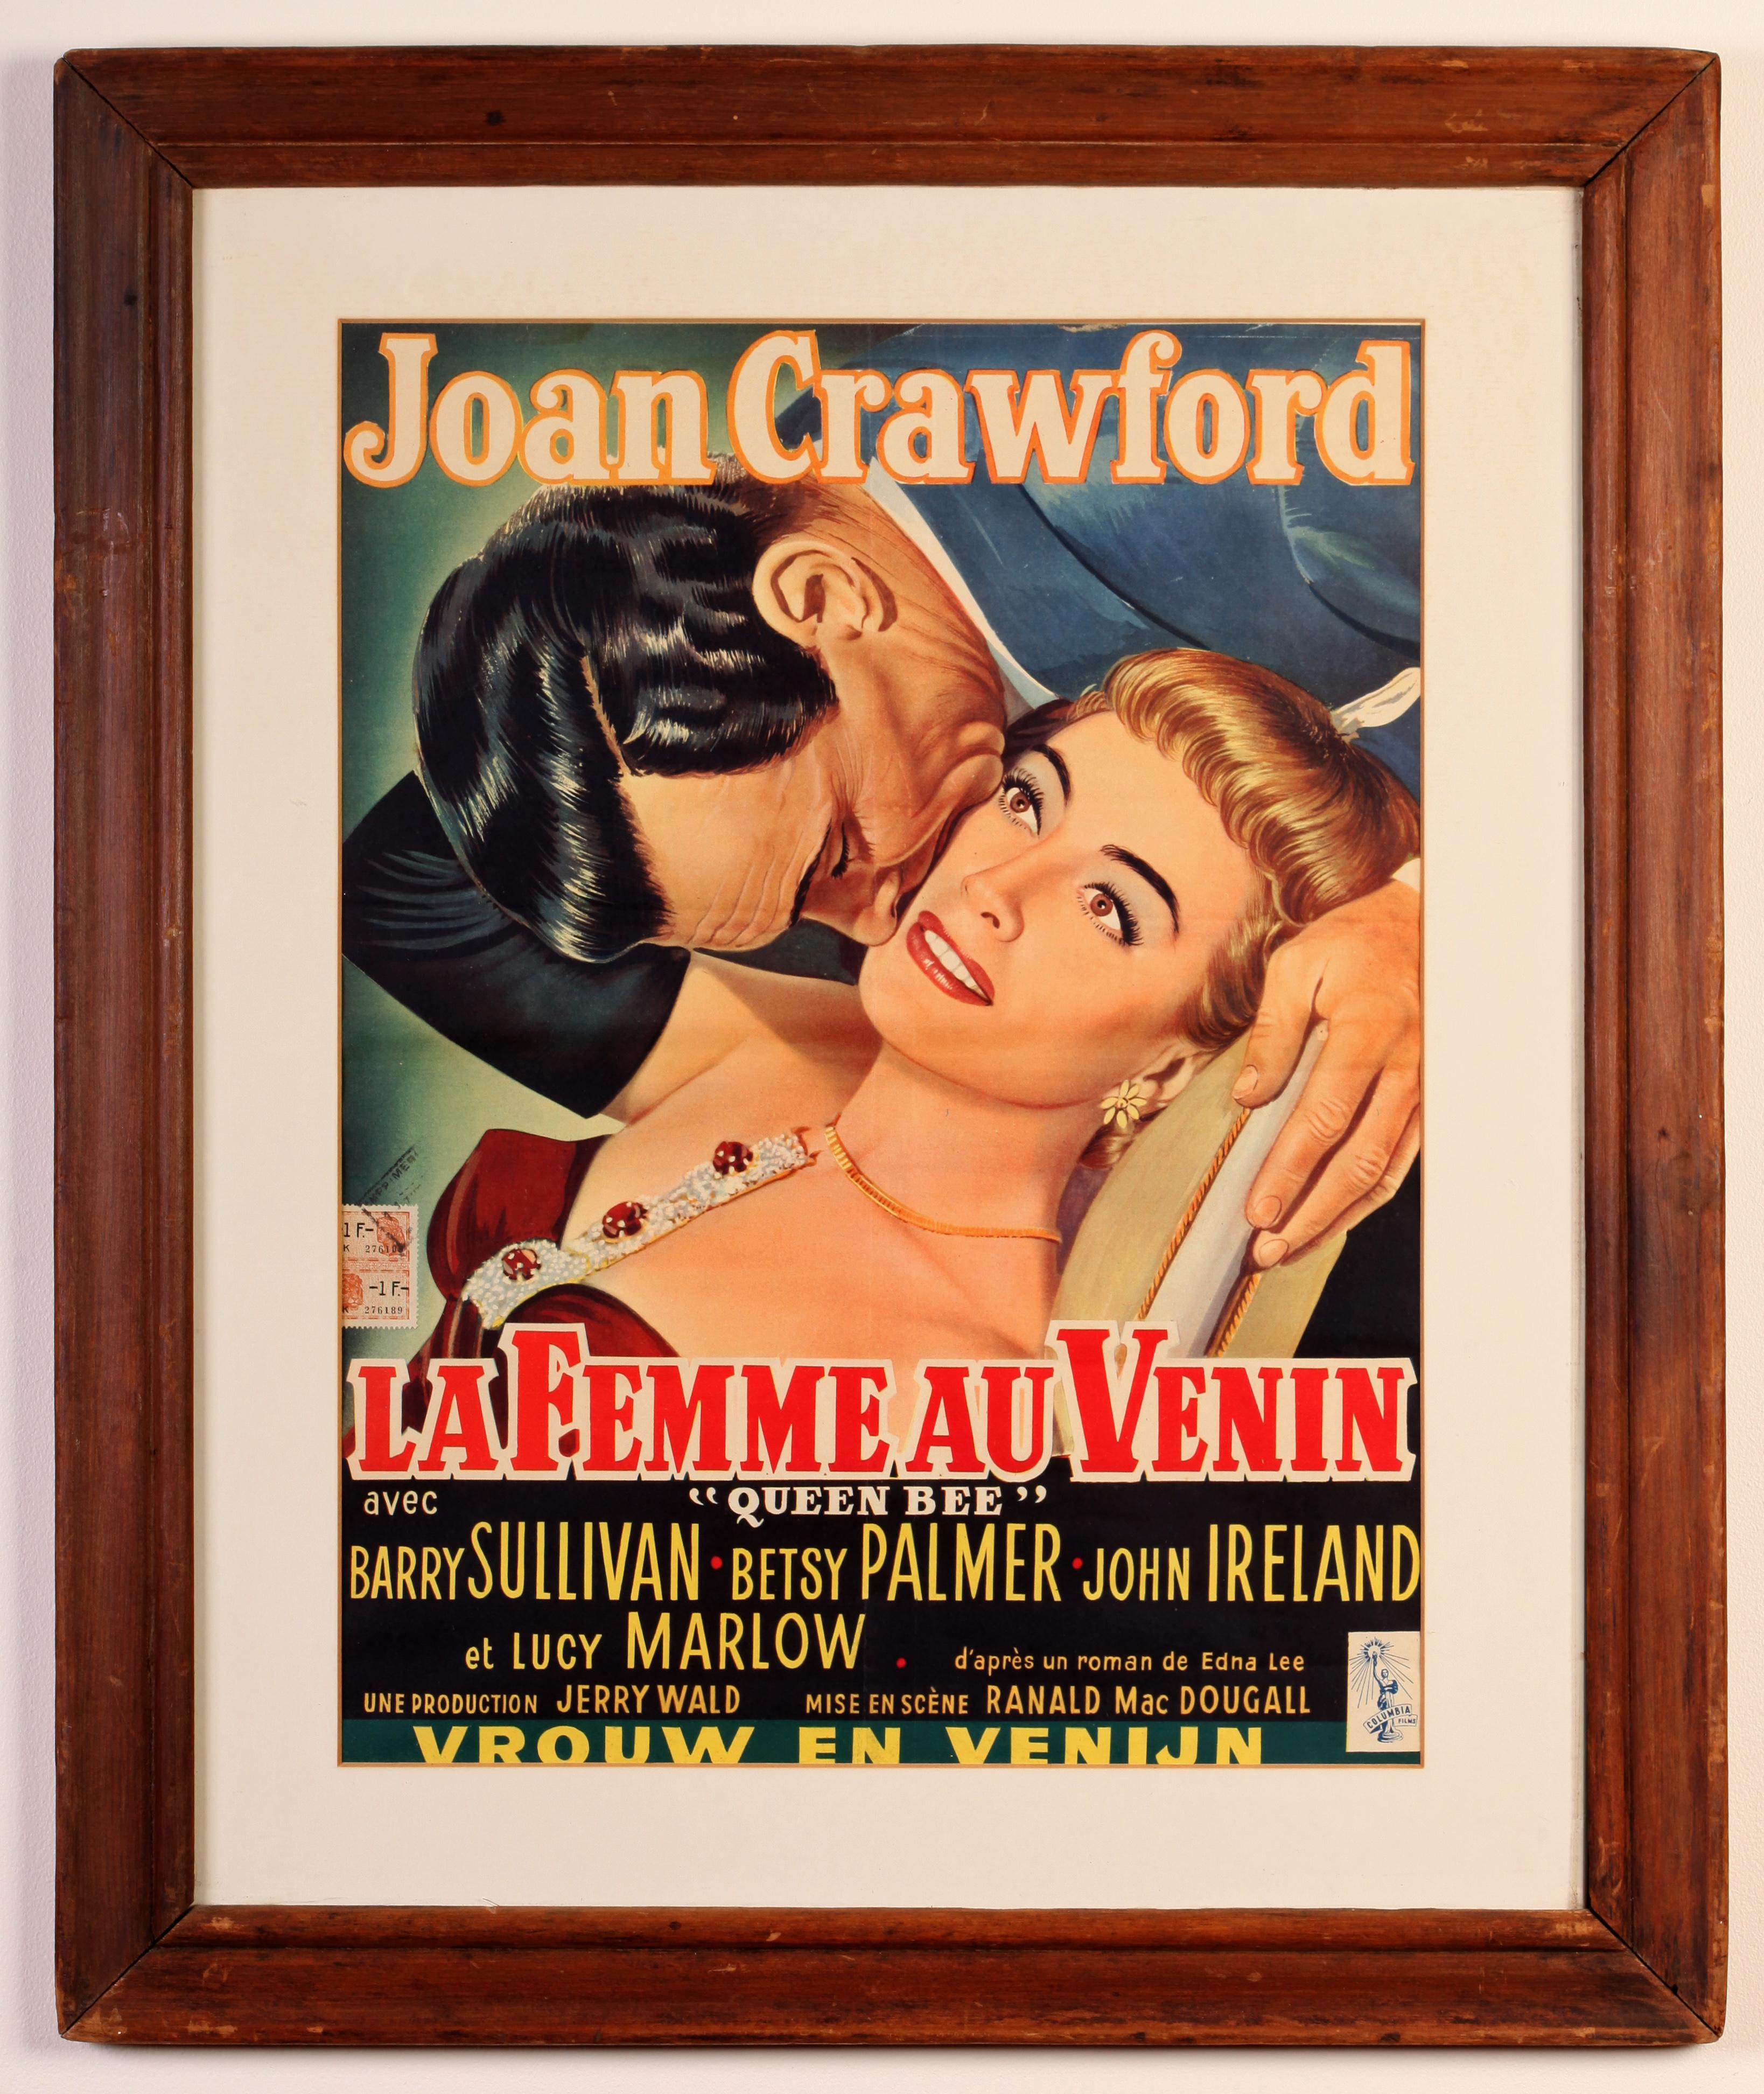 Ein fabelhaftes Paar alter Filmplakate - Joan Crawford in Queen Bee (1955) und Ingrid Bergman und Leslie Howard in Intermezzo (1939), der 1946 in Belgien veröffentlicht wurde. Beides sind original belgische Filmplakate, Queen Bee mit dem belgischen